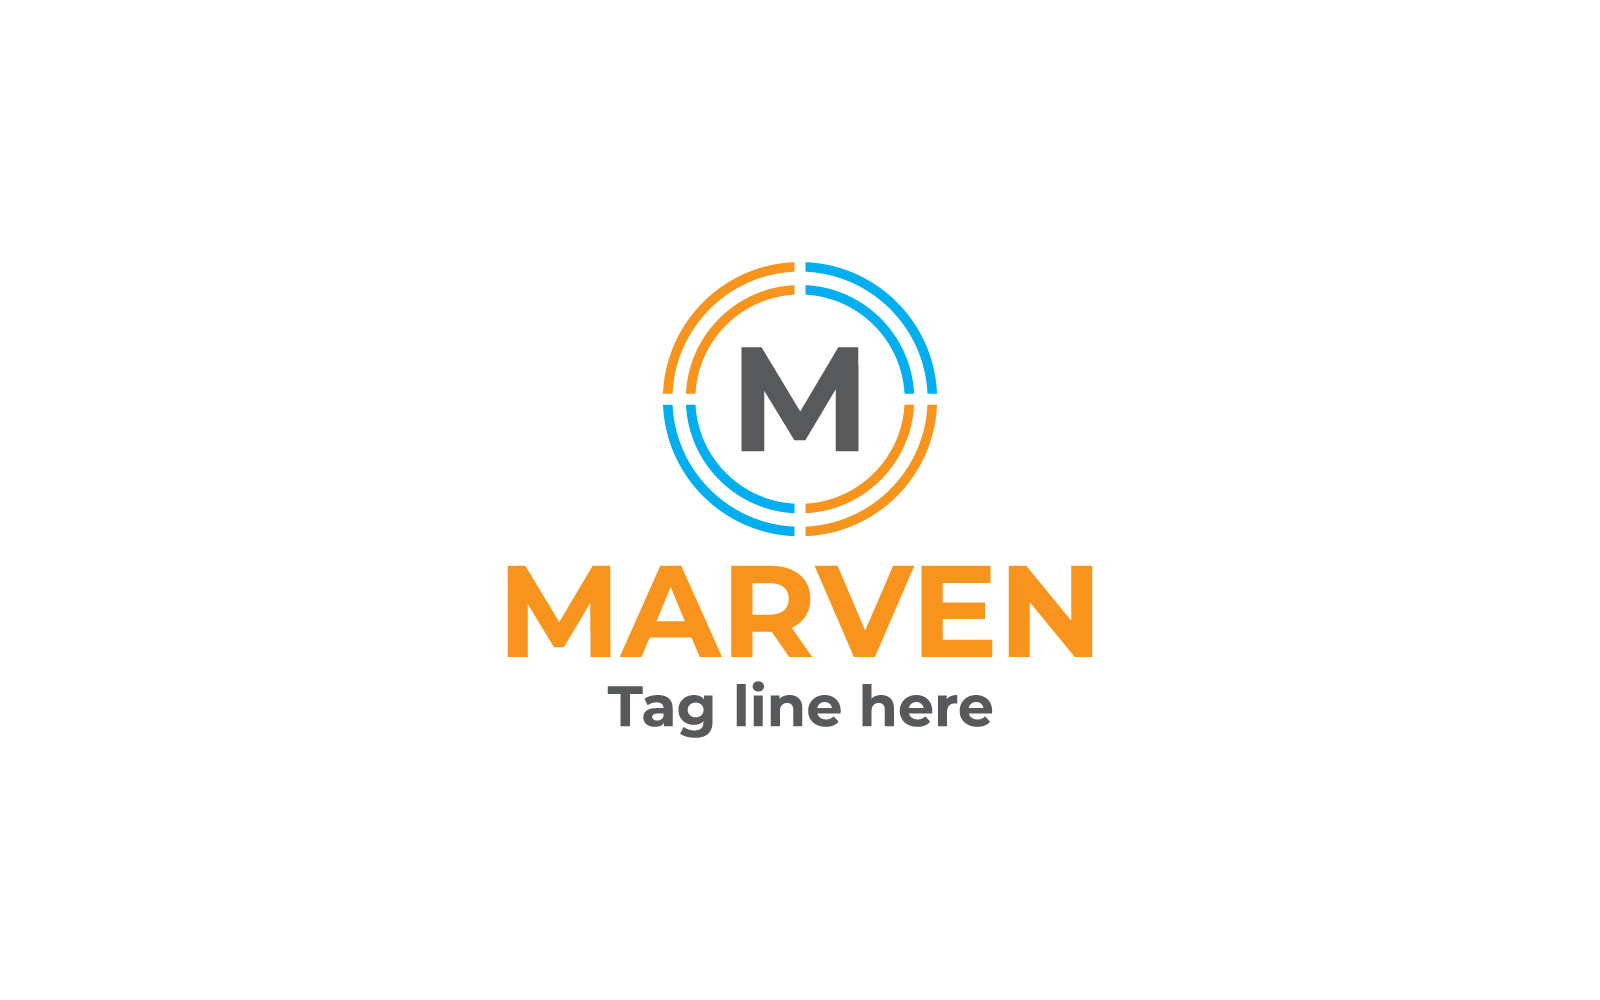 Merven M Letter Logo Design Template